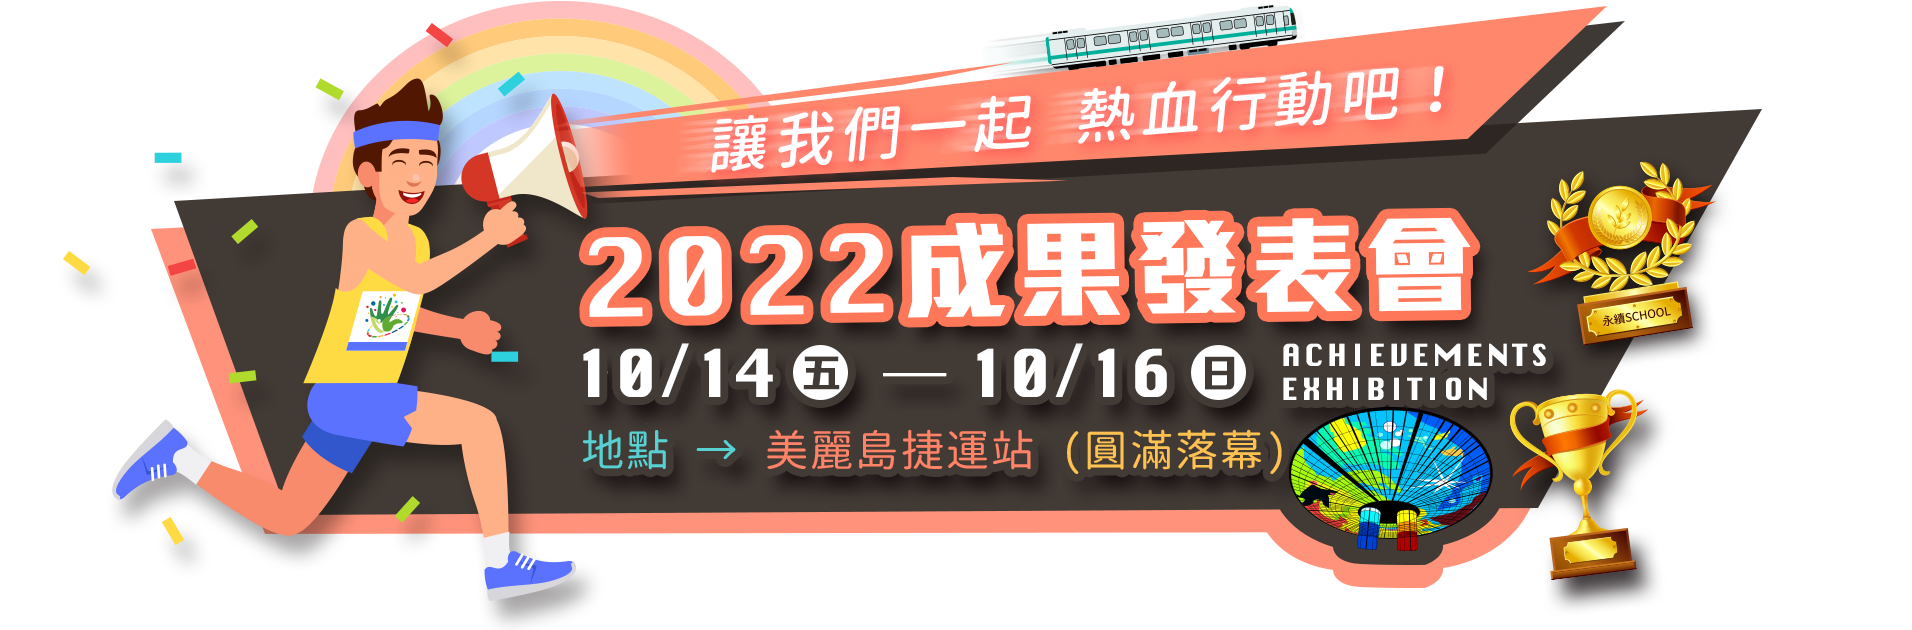 2022成果發表會 時間：10/14-10/16 地點：美麗島捷運站 穹頂大廳